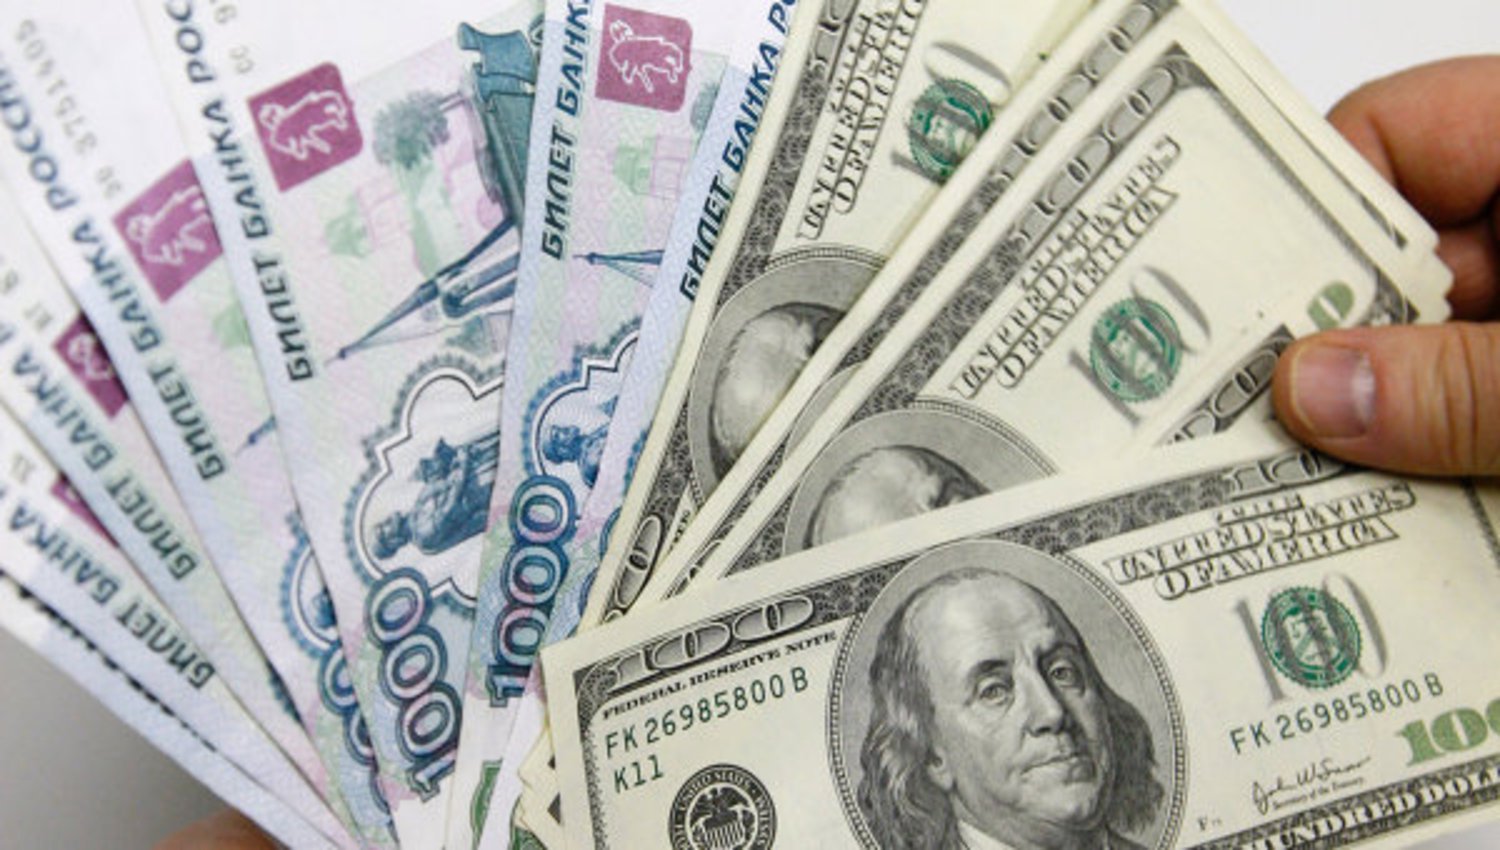 Америка похоронила рубль: в США ставки на падение российской валюты превысили ставки на ее рост на сумму около 15 млрд руб